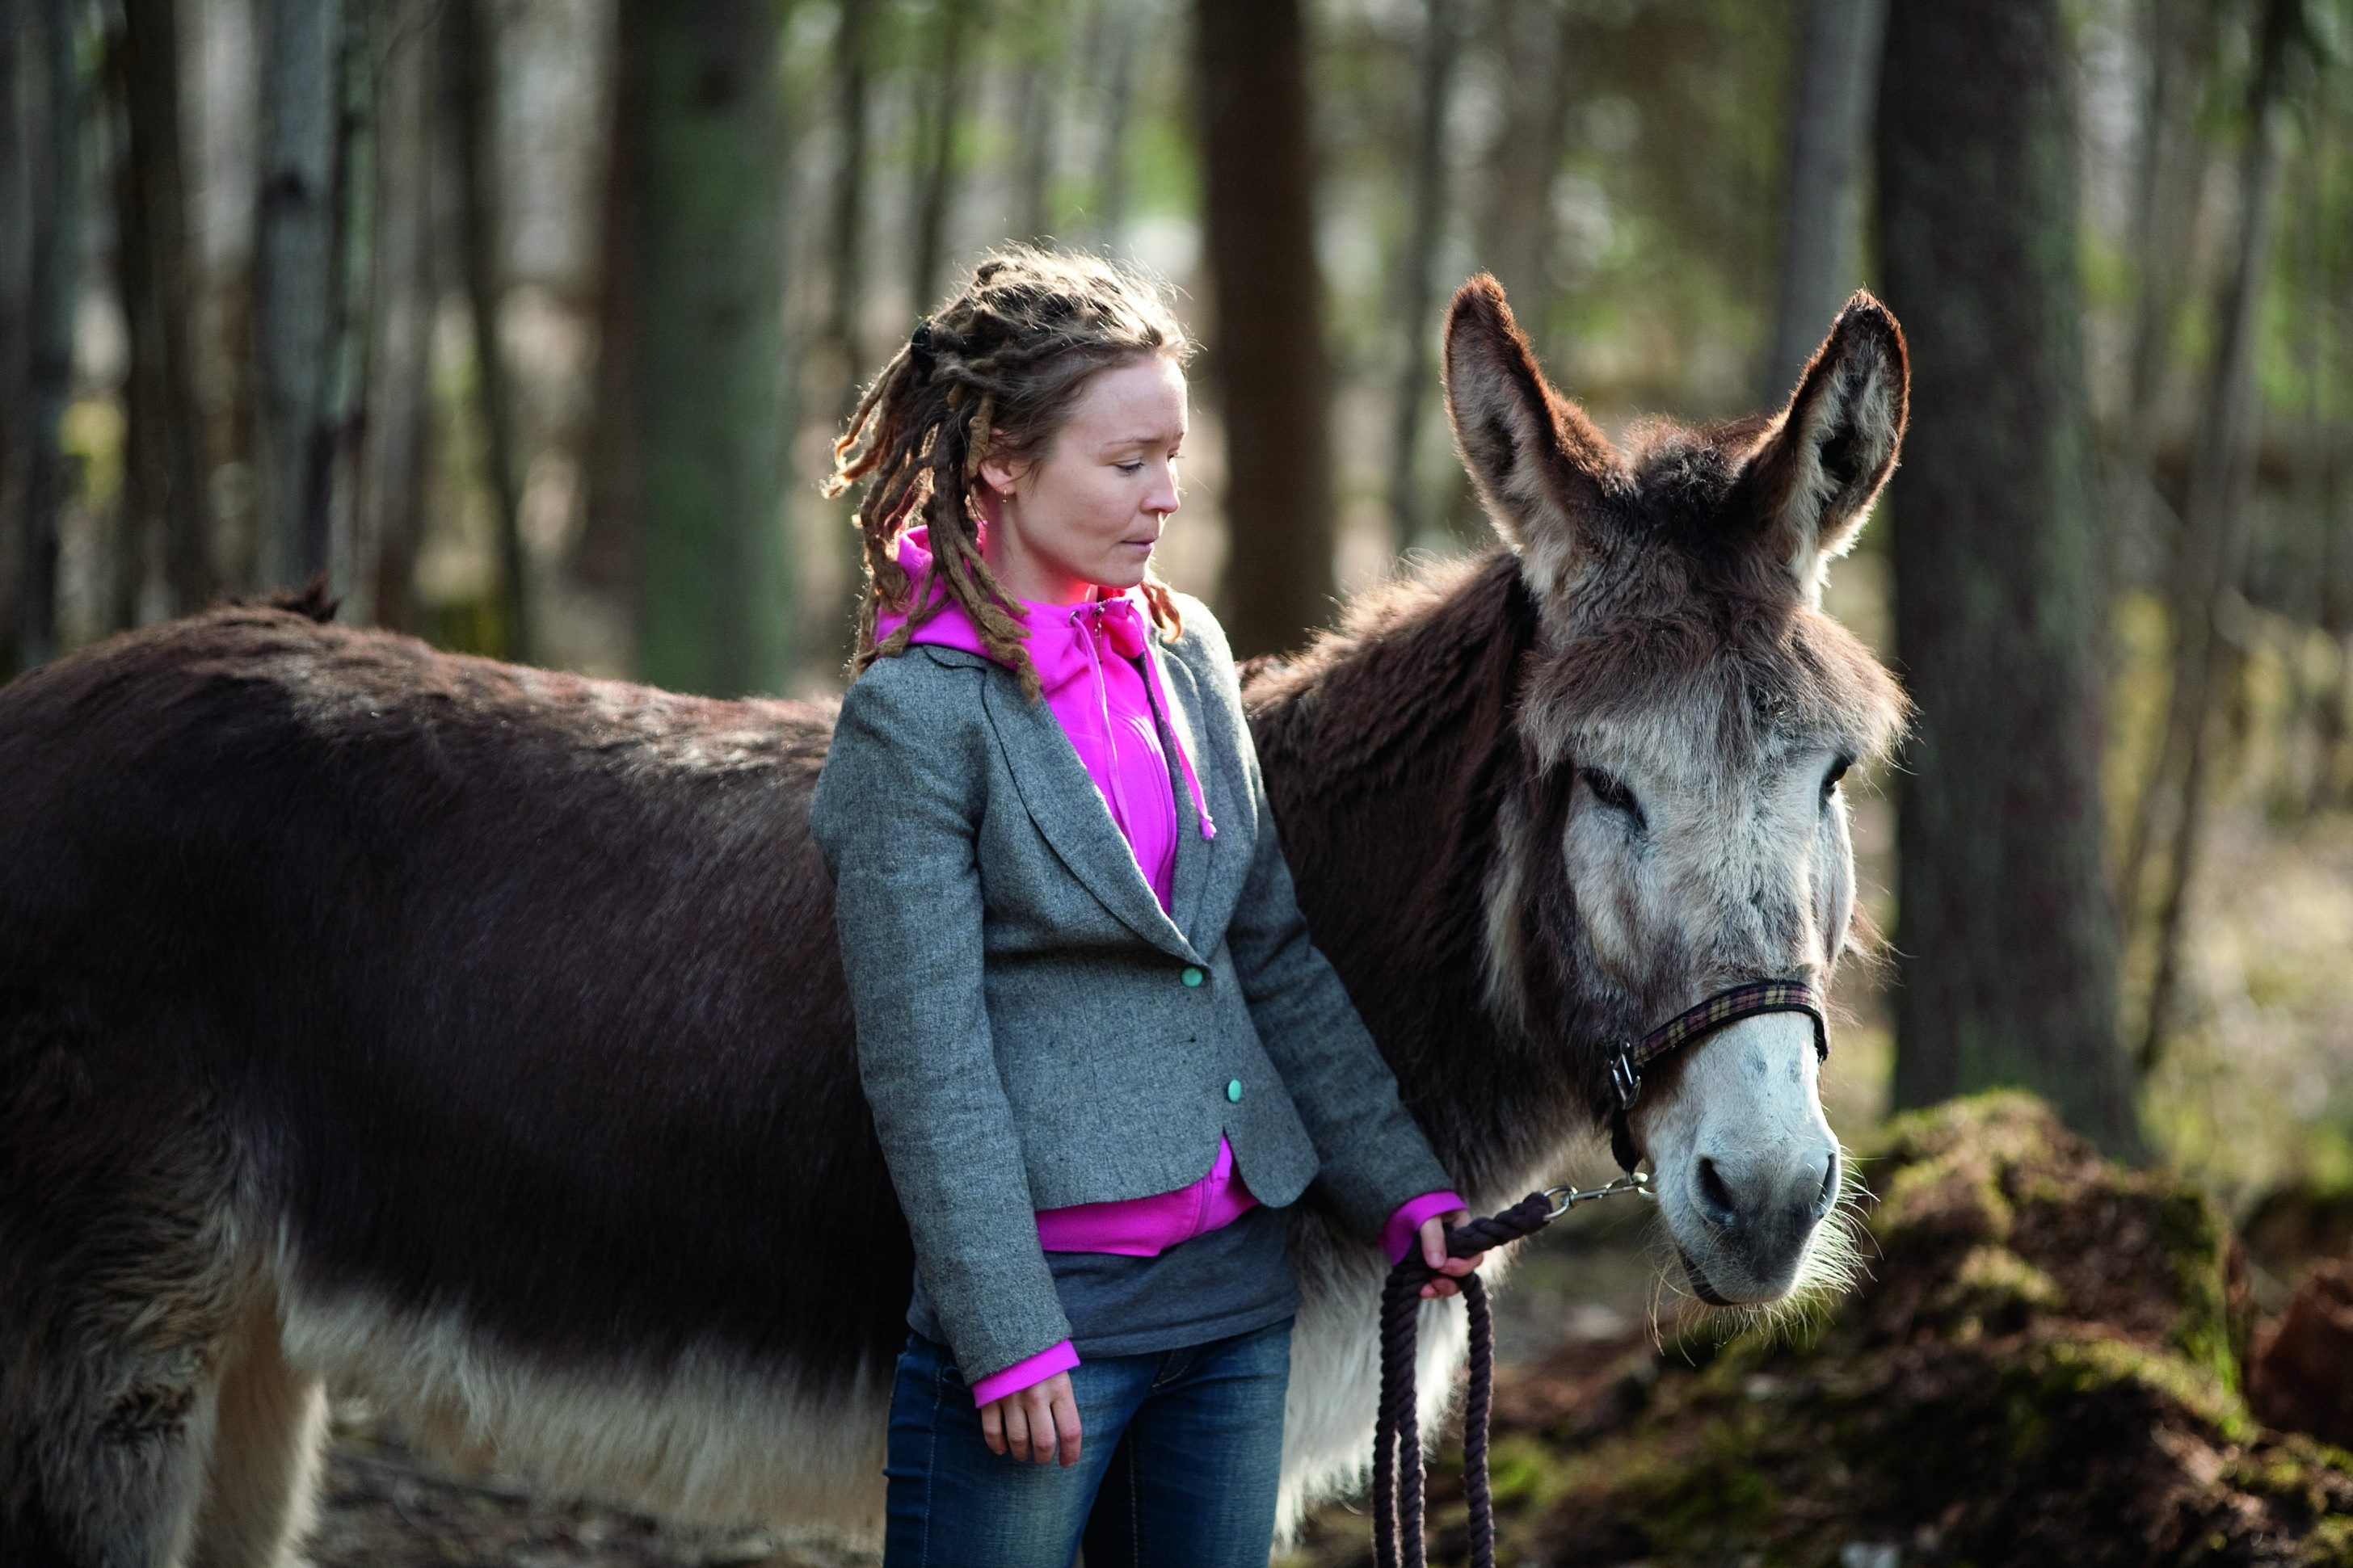 woman with donkey from aija-liisa ahtila's exhibition